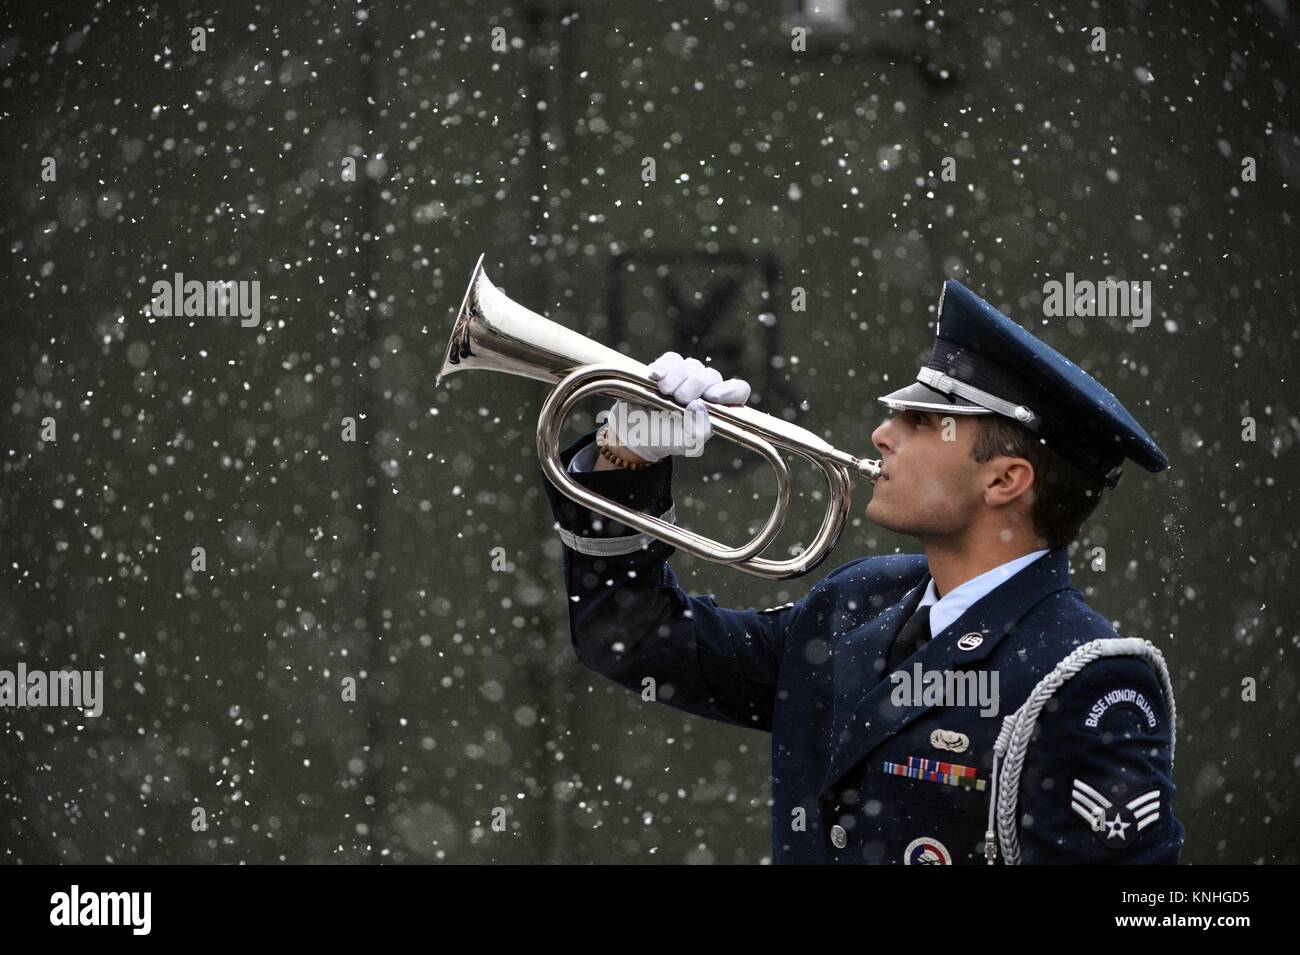 Ein US-Soldat spielt die Hähne auf einem signalhorn in den Schnee während einer Trainingseinheit am Francis S. Gabreski Air National Guard Base 15 Dezember, 2016 in Westhampton Beach, New York. (Foto von Christopher S. Muncy über Planetpix) Stockfoto